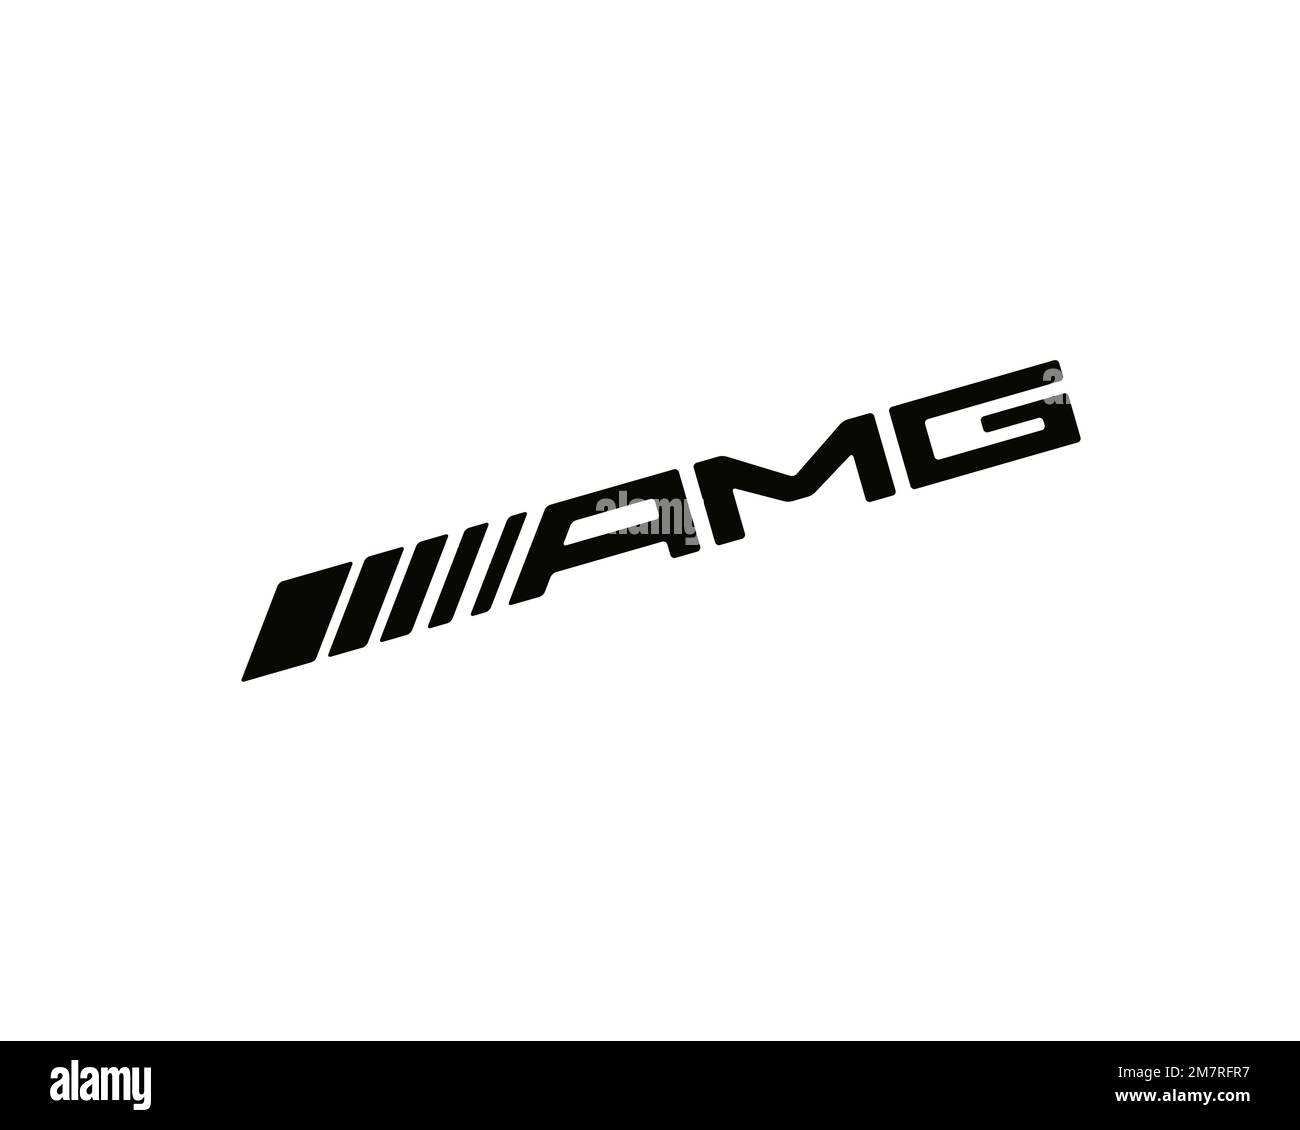 Mercedes AMG, Logo, White background Stock Photo - Alamy